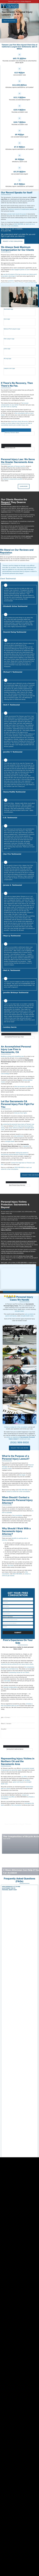 Tiemann Law Firm - Sacramento CA Lawyers